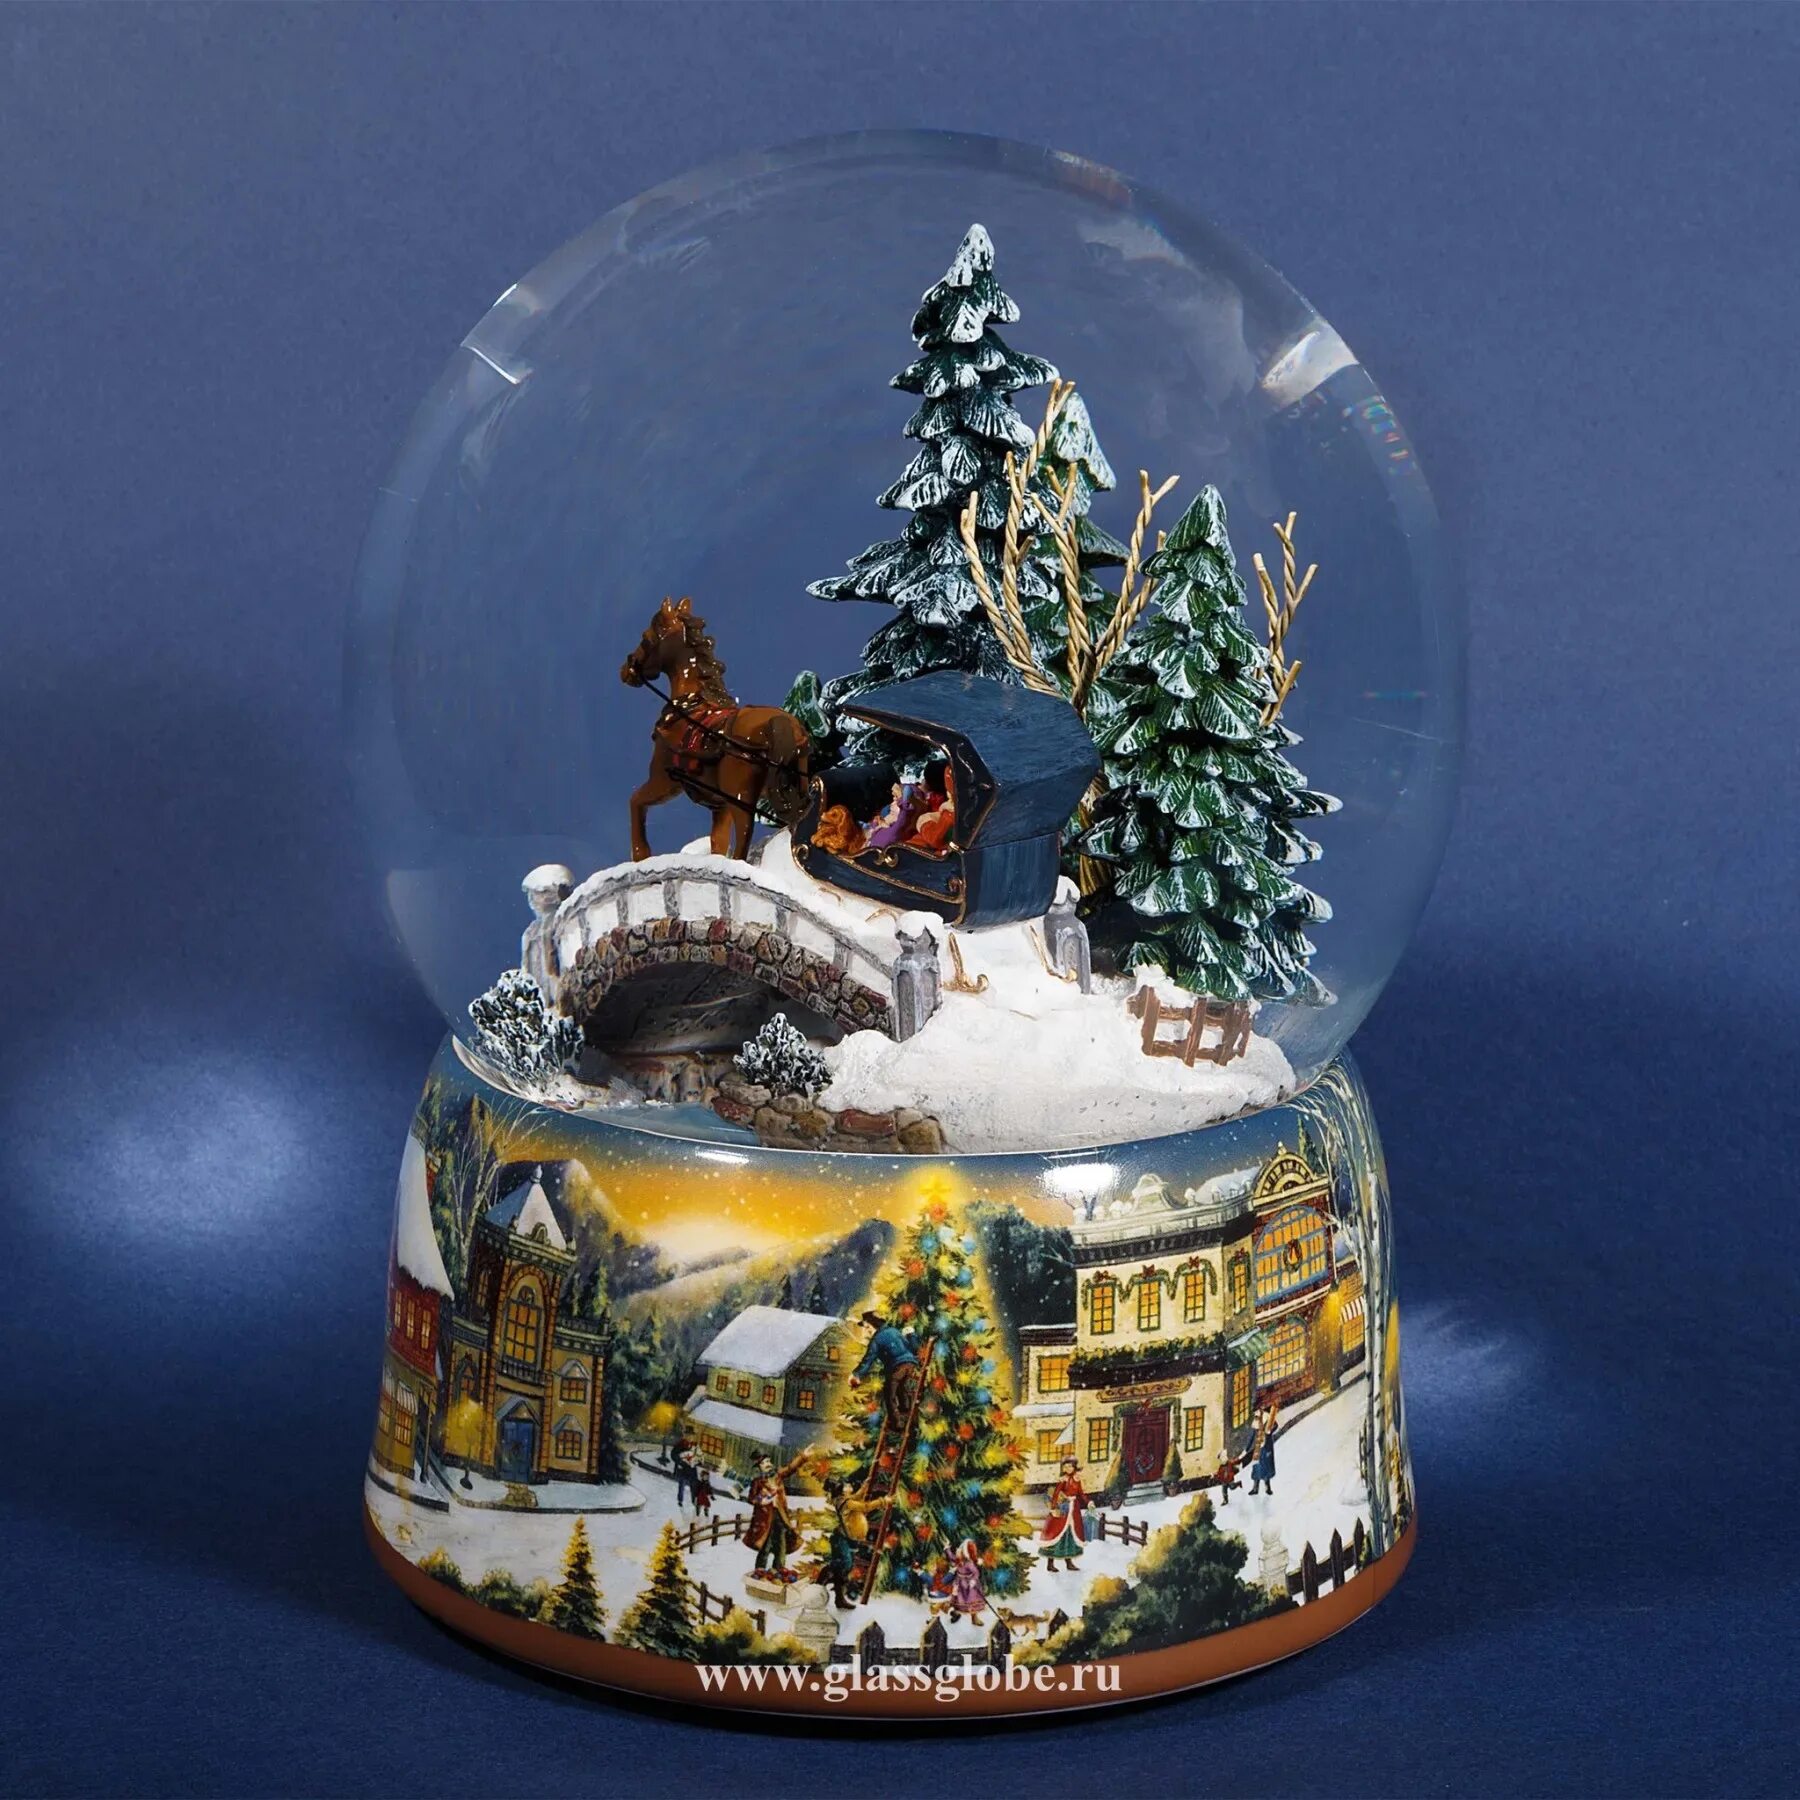 Шары внутри снег. Снежный шар Glassglobe. Новогодняя шкатулка «снежный шар» 40233. Снежный шар Джейкобстаун. Магазин снежных шаров Glassglobe.